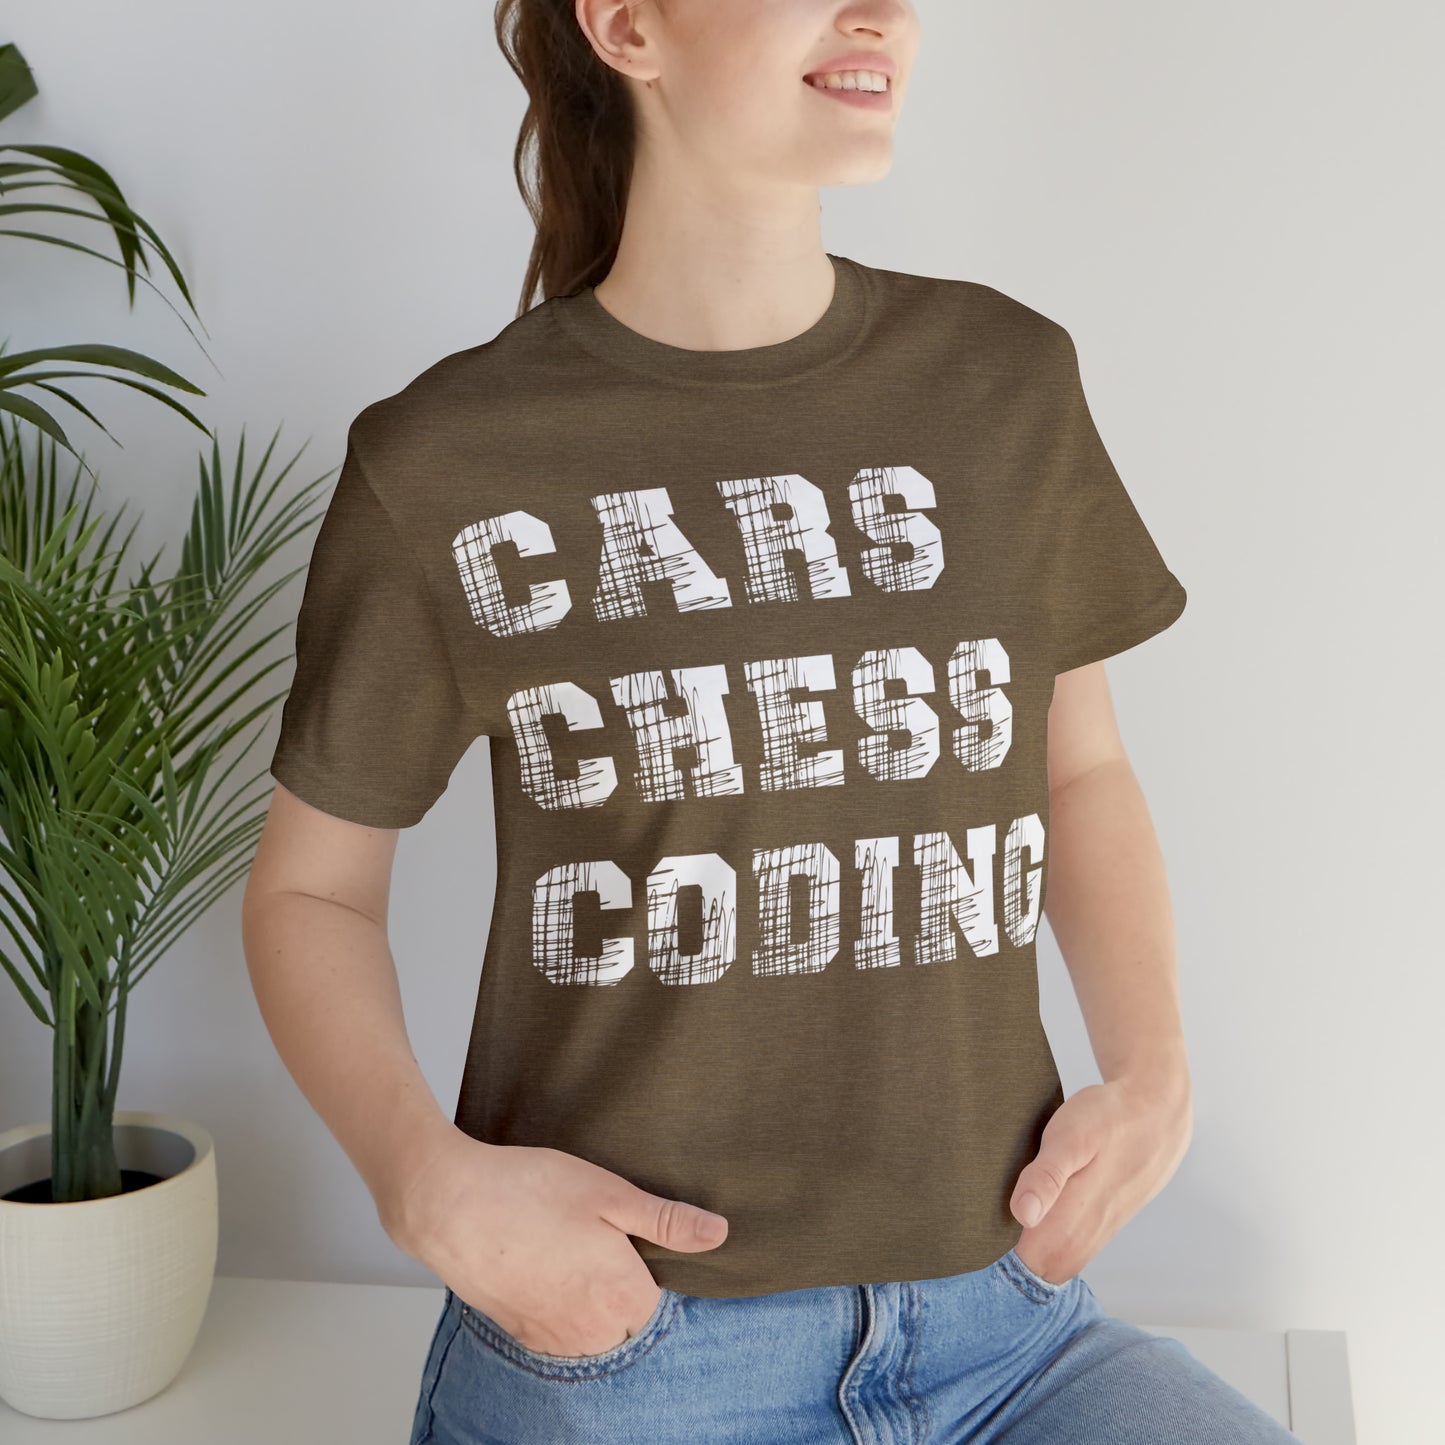 Car Shirt Chess T Shirt Coder Shirt Gift for Car Enthusiast Programmer Gift Ideas Chess Player Gift Unique Shirt Unisex Shirt Chess Gift